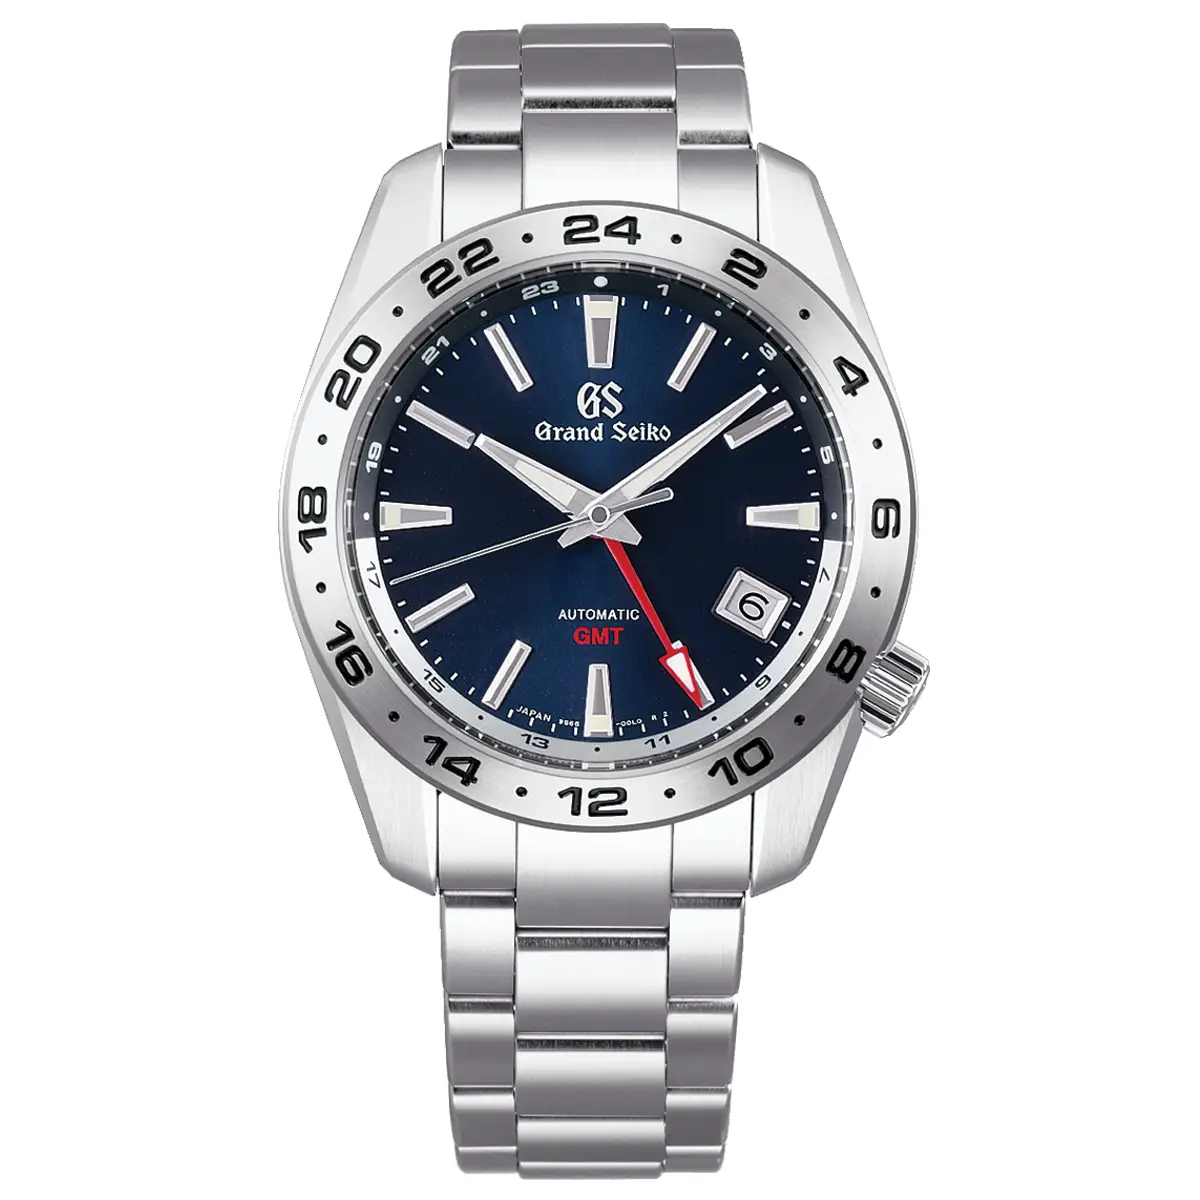 Đồng hồ Grand Seiko Sport Collection GMT SBGM245 mặt số màu xanh. Dây đeo bằng thép. Thân vỏ bằng thép.